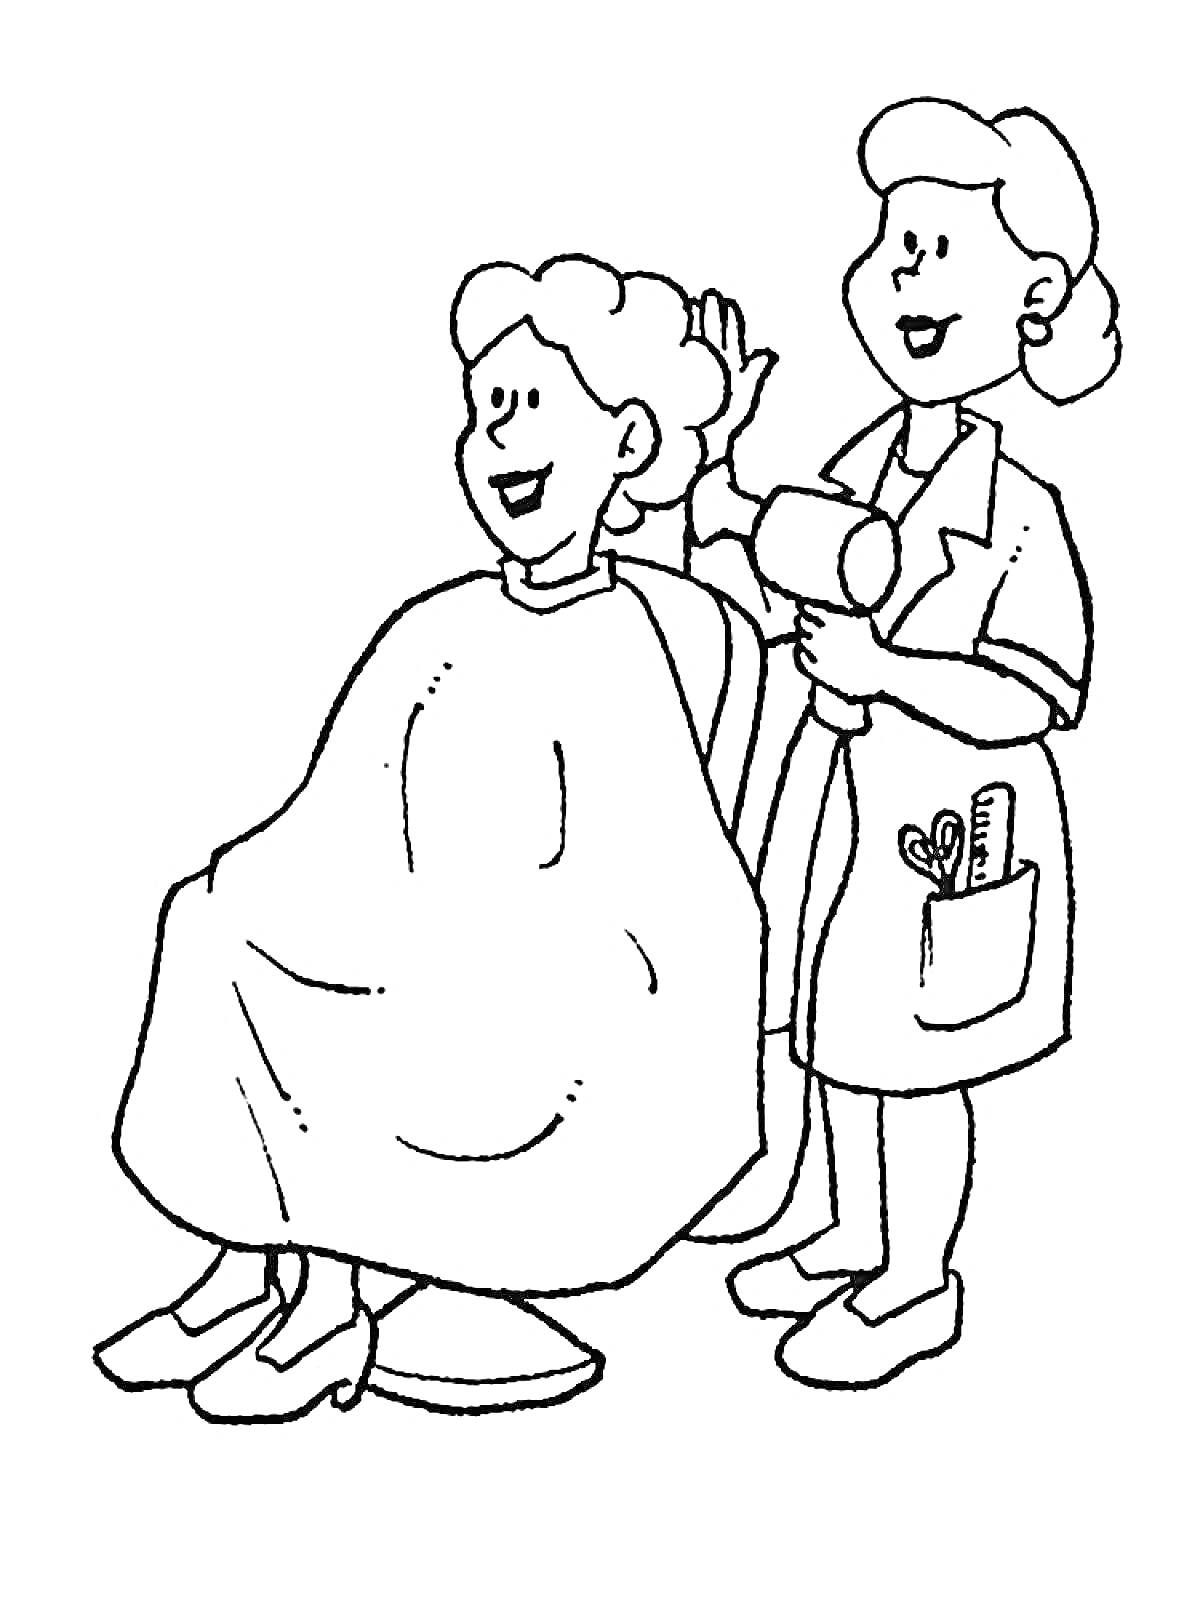 Парикмахерская, два человека, клиент и парикмахер, фен, стрижка волос, инструменты в кармане парикмахера